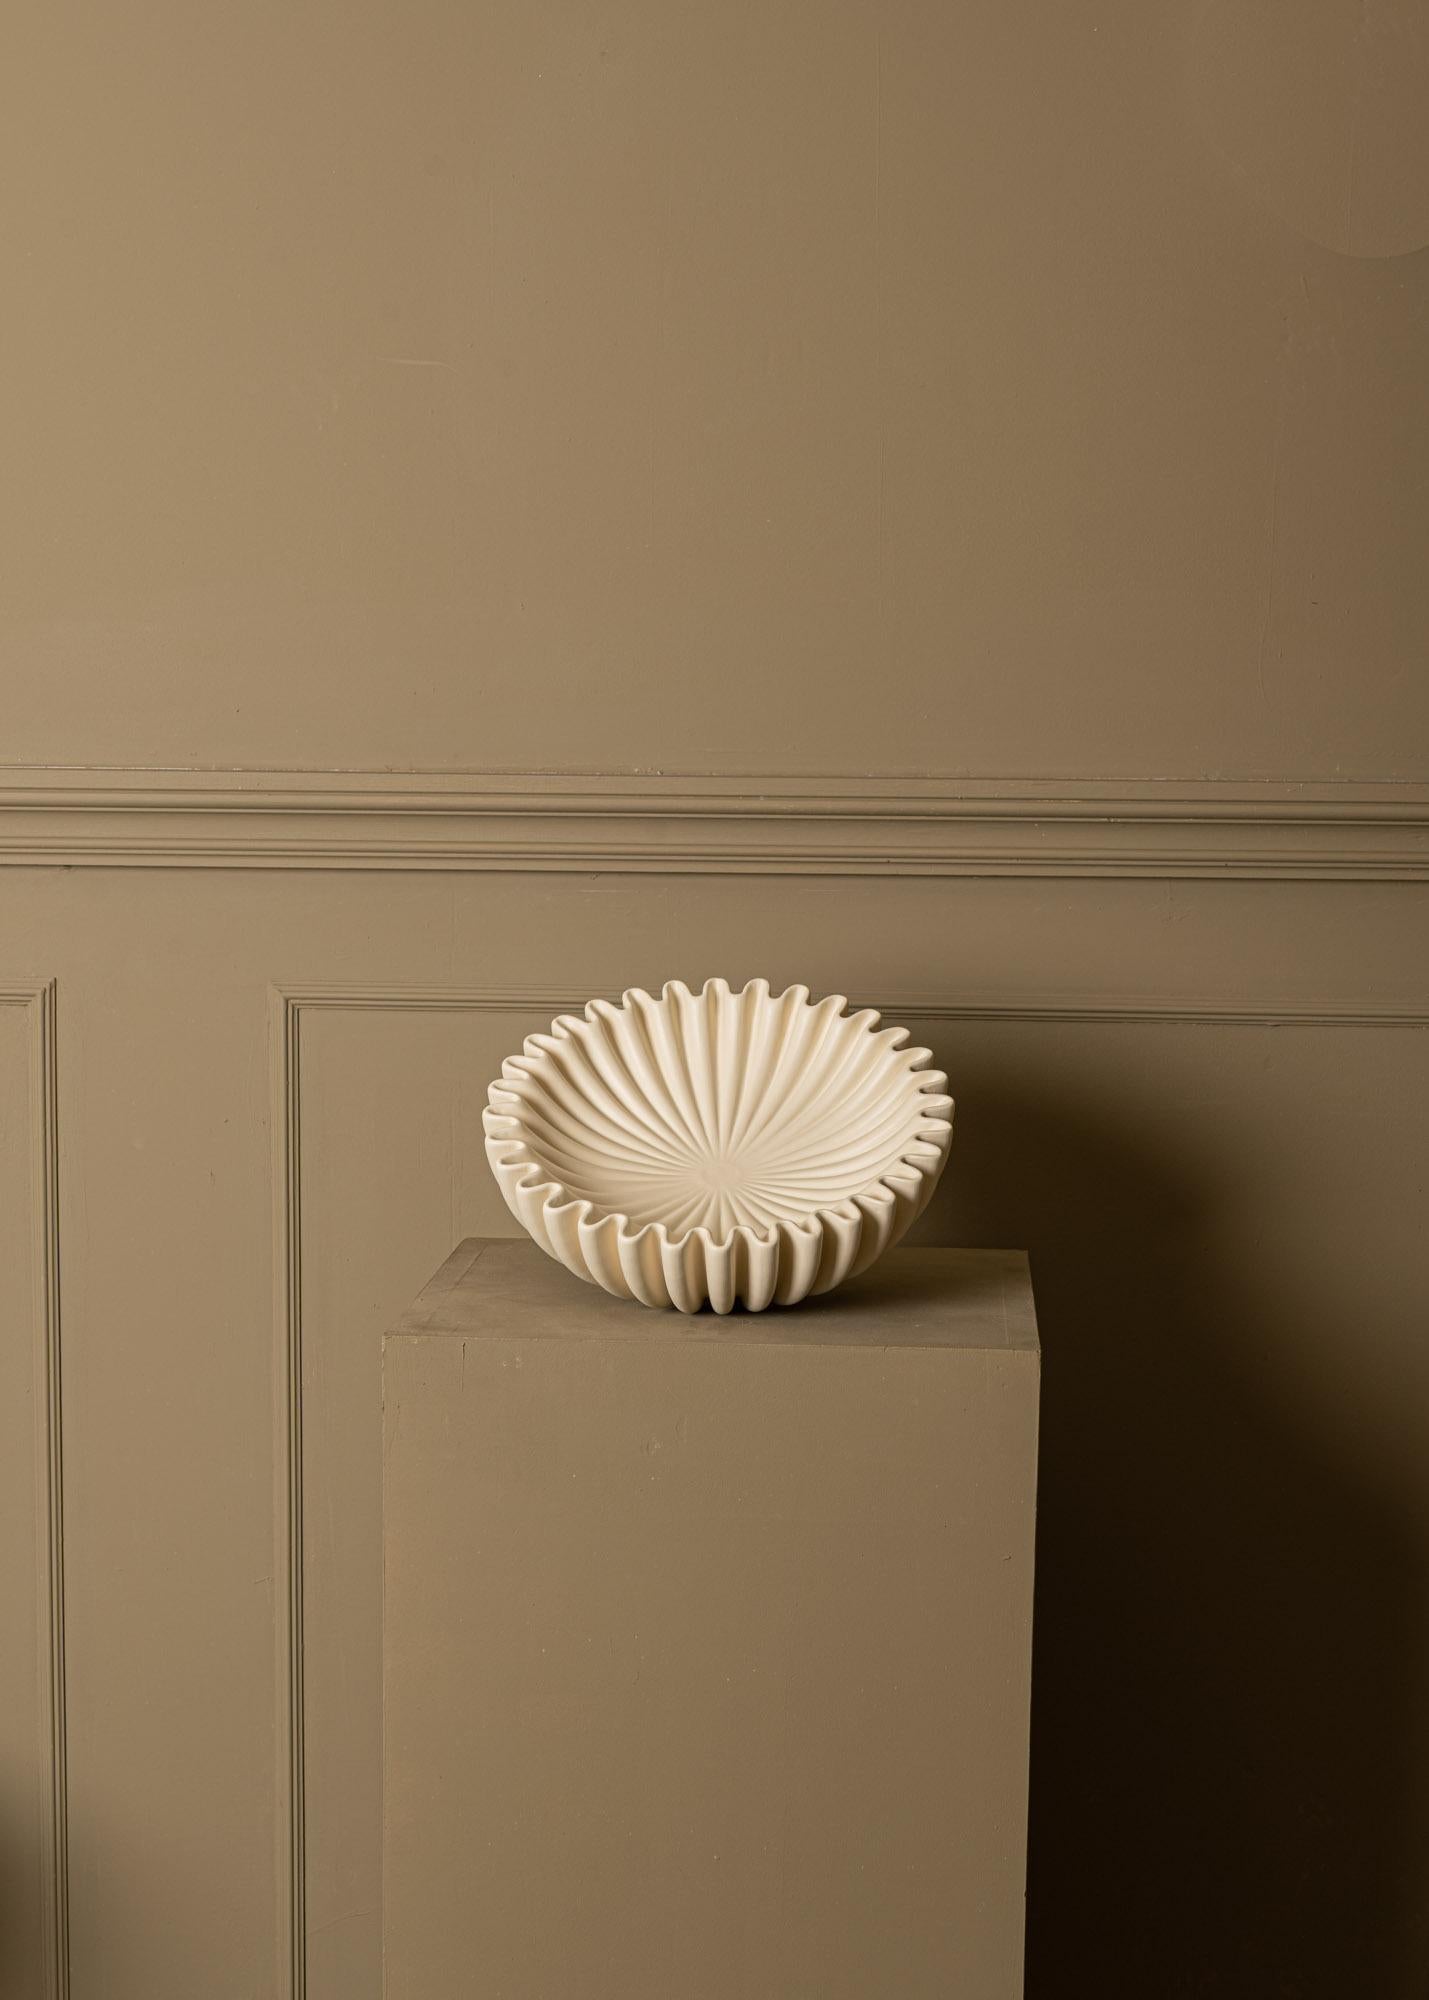 Ein herausragendes Stück Keramik, das durch die kreisförmige Anhäufung von Einlässen zu einem muschelförmigen Objekt wird. Nur eine dekorative Schale.